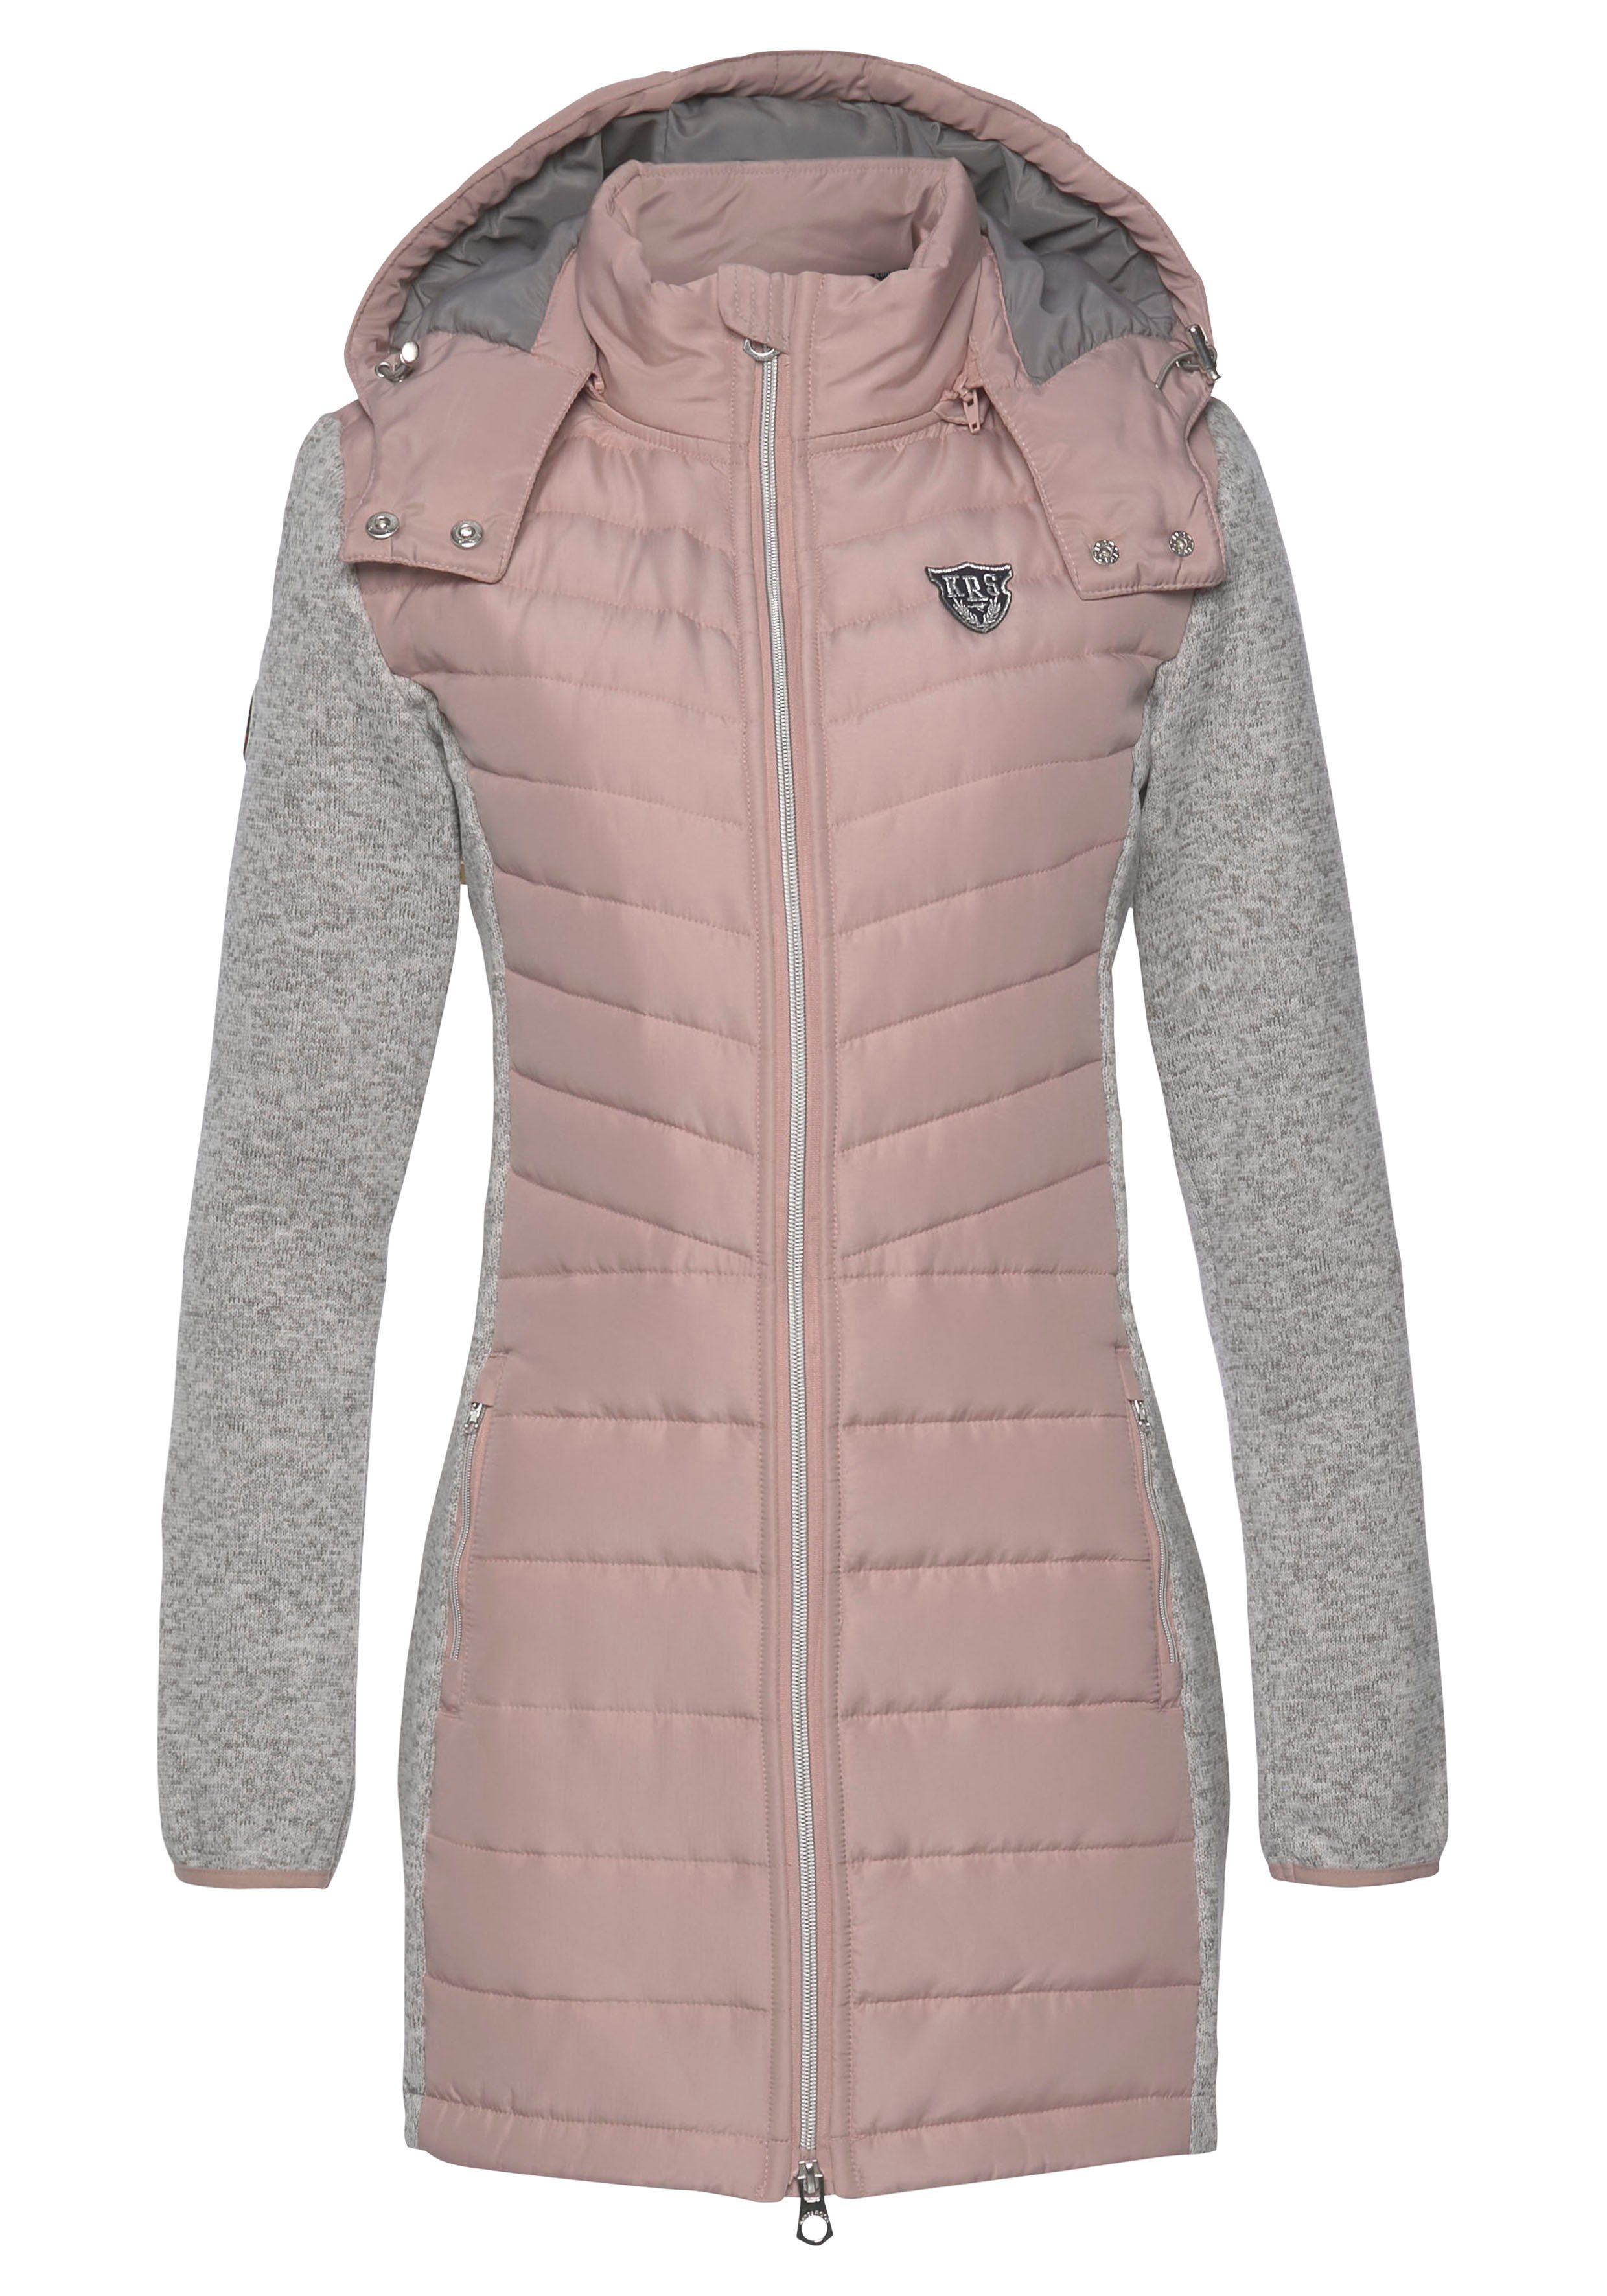 KangaROOS Langjacke im trendigen 2-In-1 aus (Jacke nachhaltigem Look Material) grau-rosa